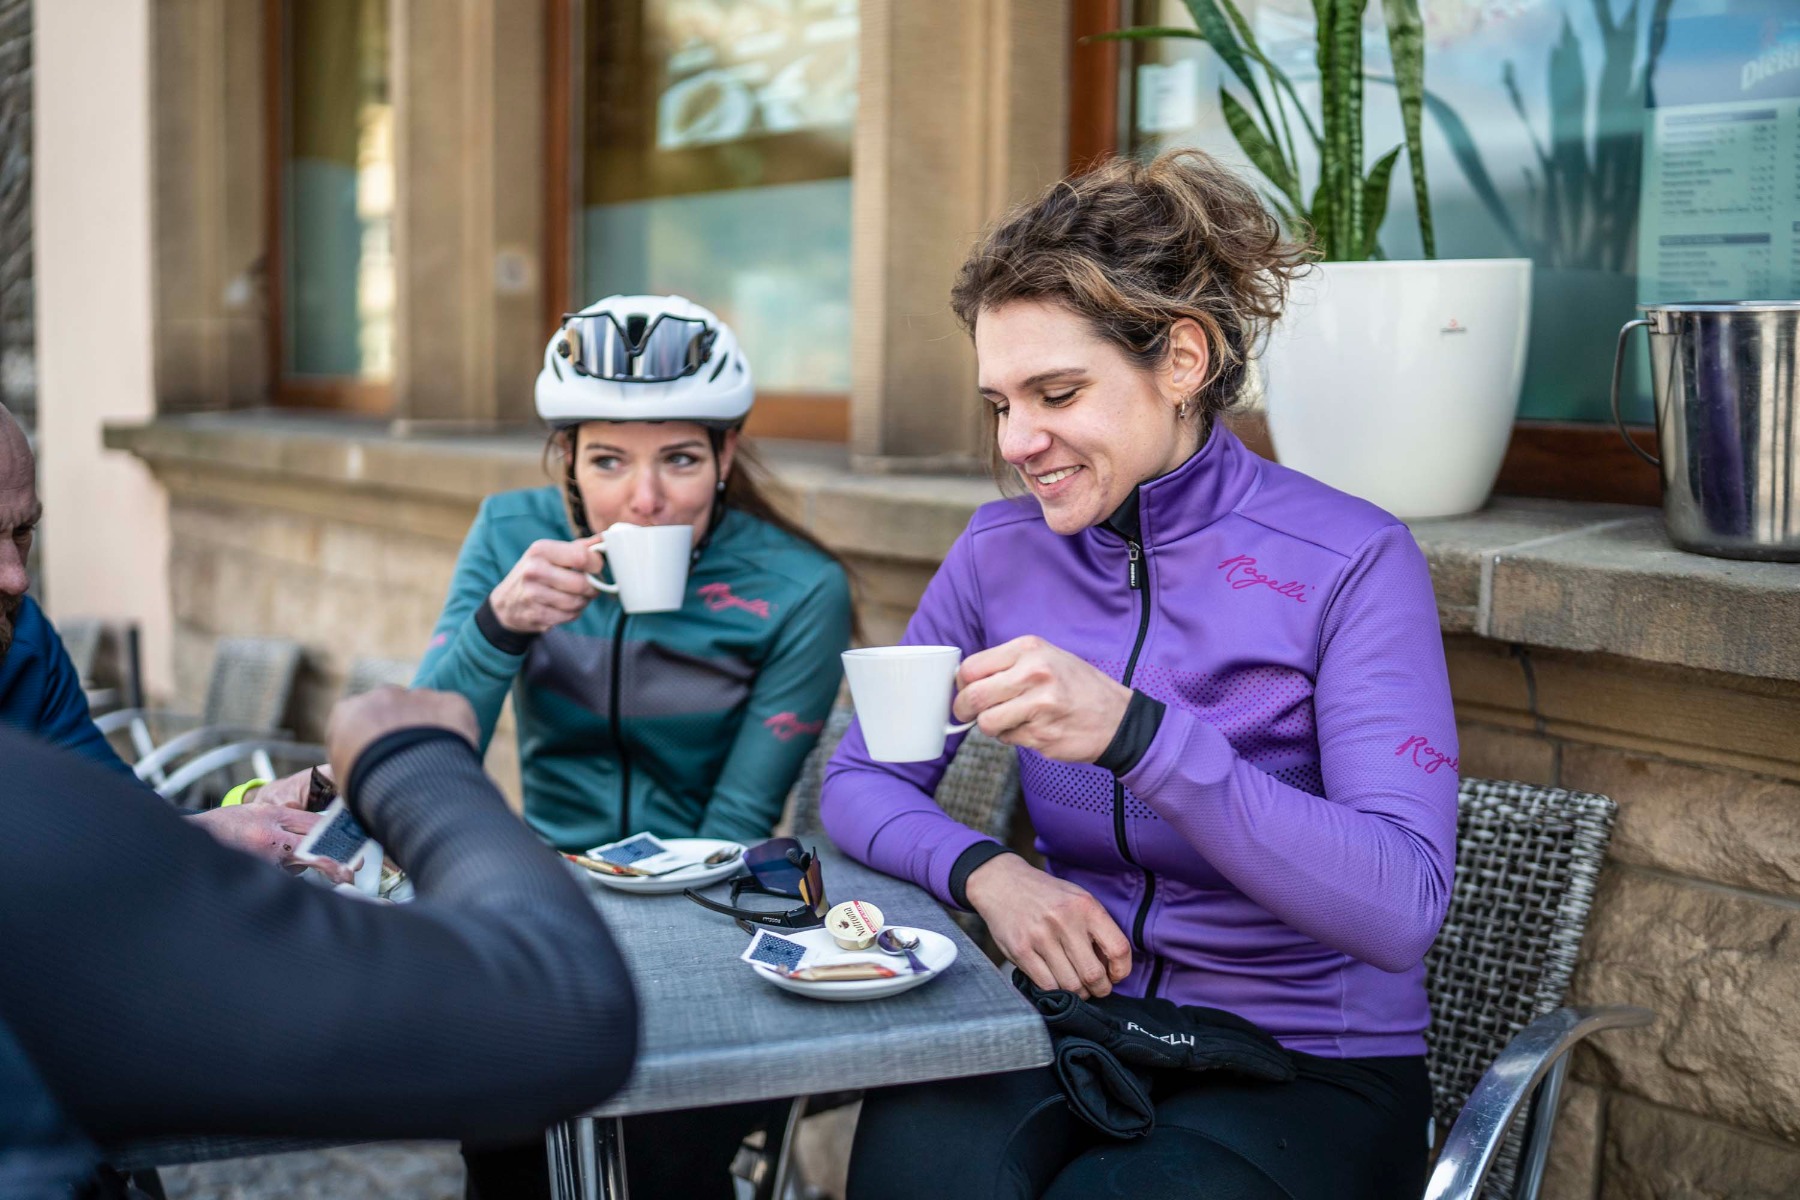 Twee vrouwen gekleed in comfortabele Rogelli fietskleding genieten van een heerlijke warme chocolademelk met slagroom, een welverdiende traktatie na een actieve rit.